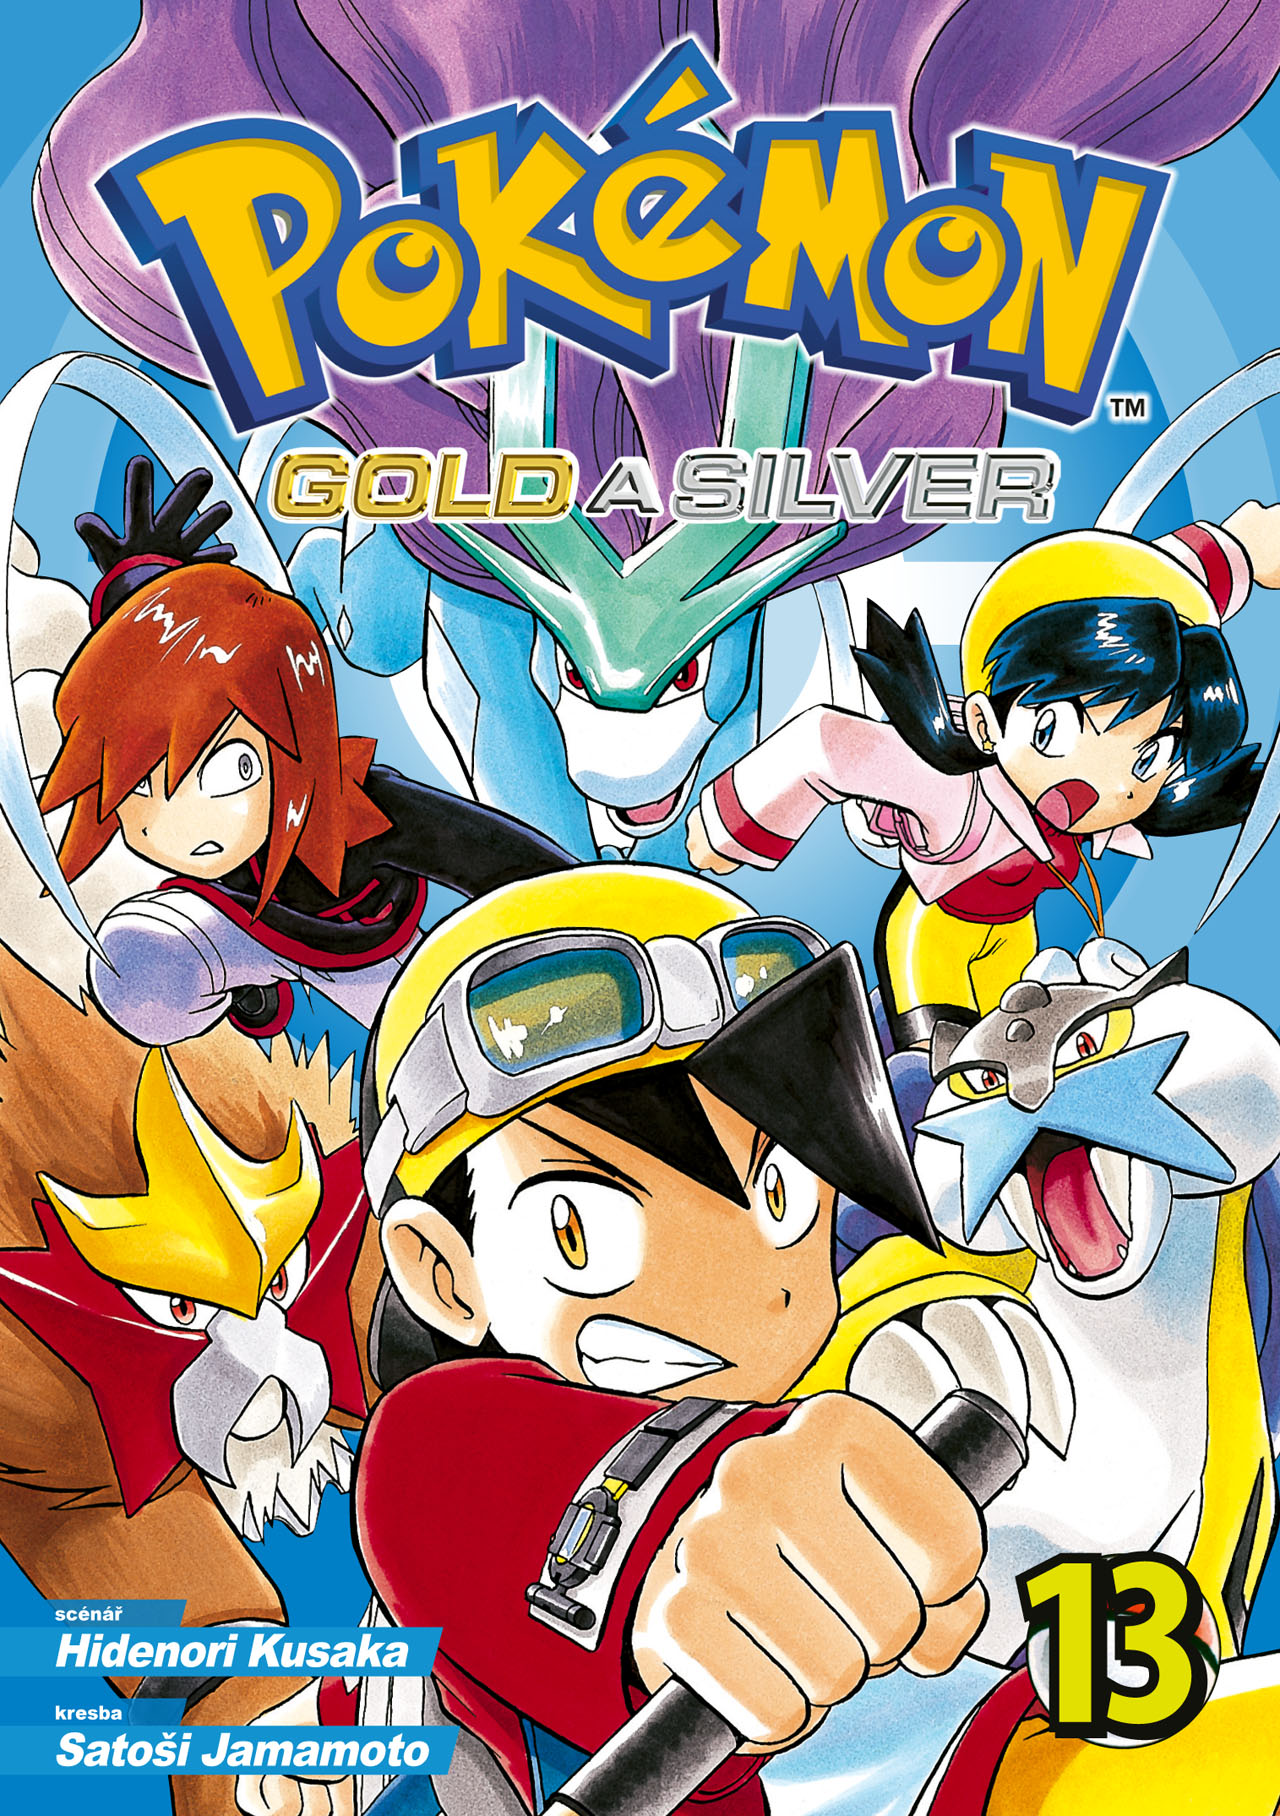 obrázek k novince - Pokémon 13 (Gold a Silver)